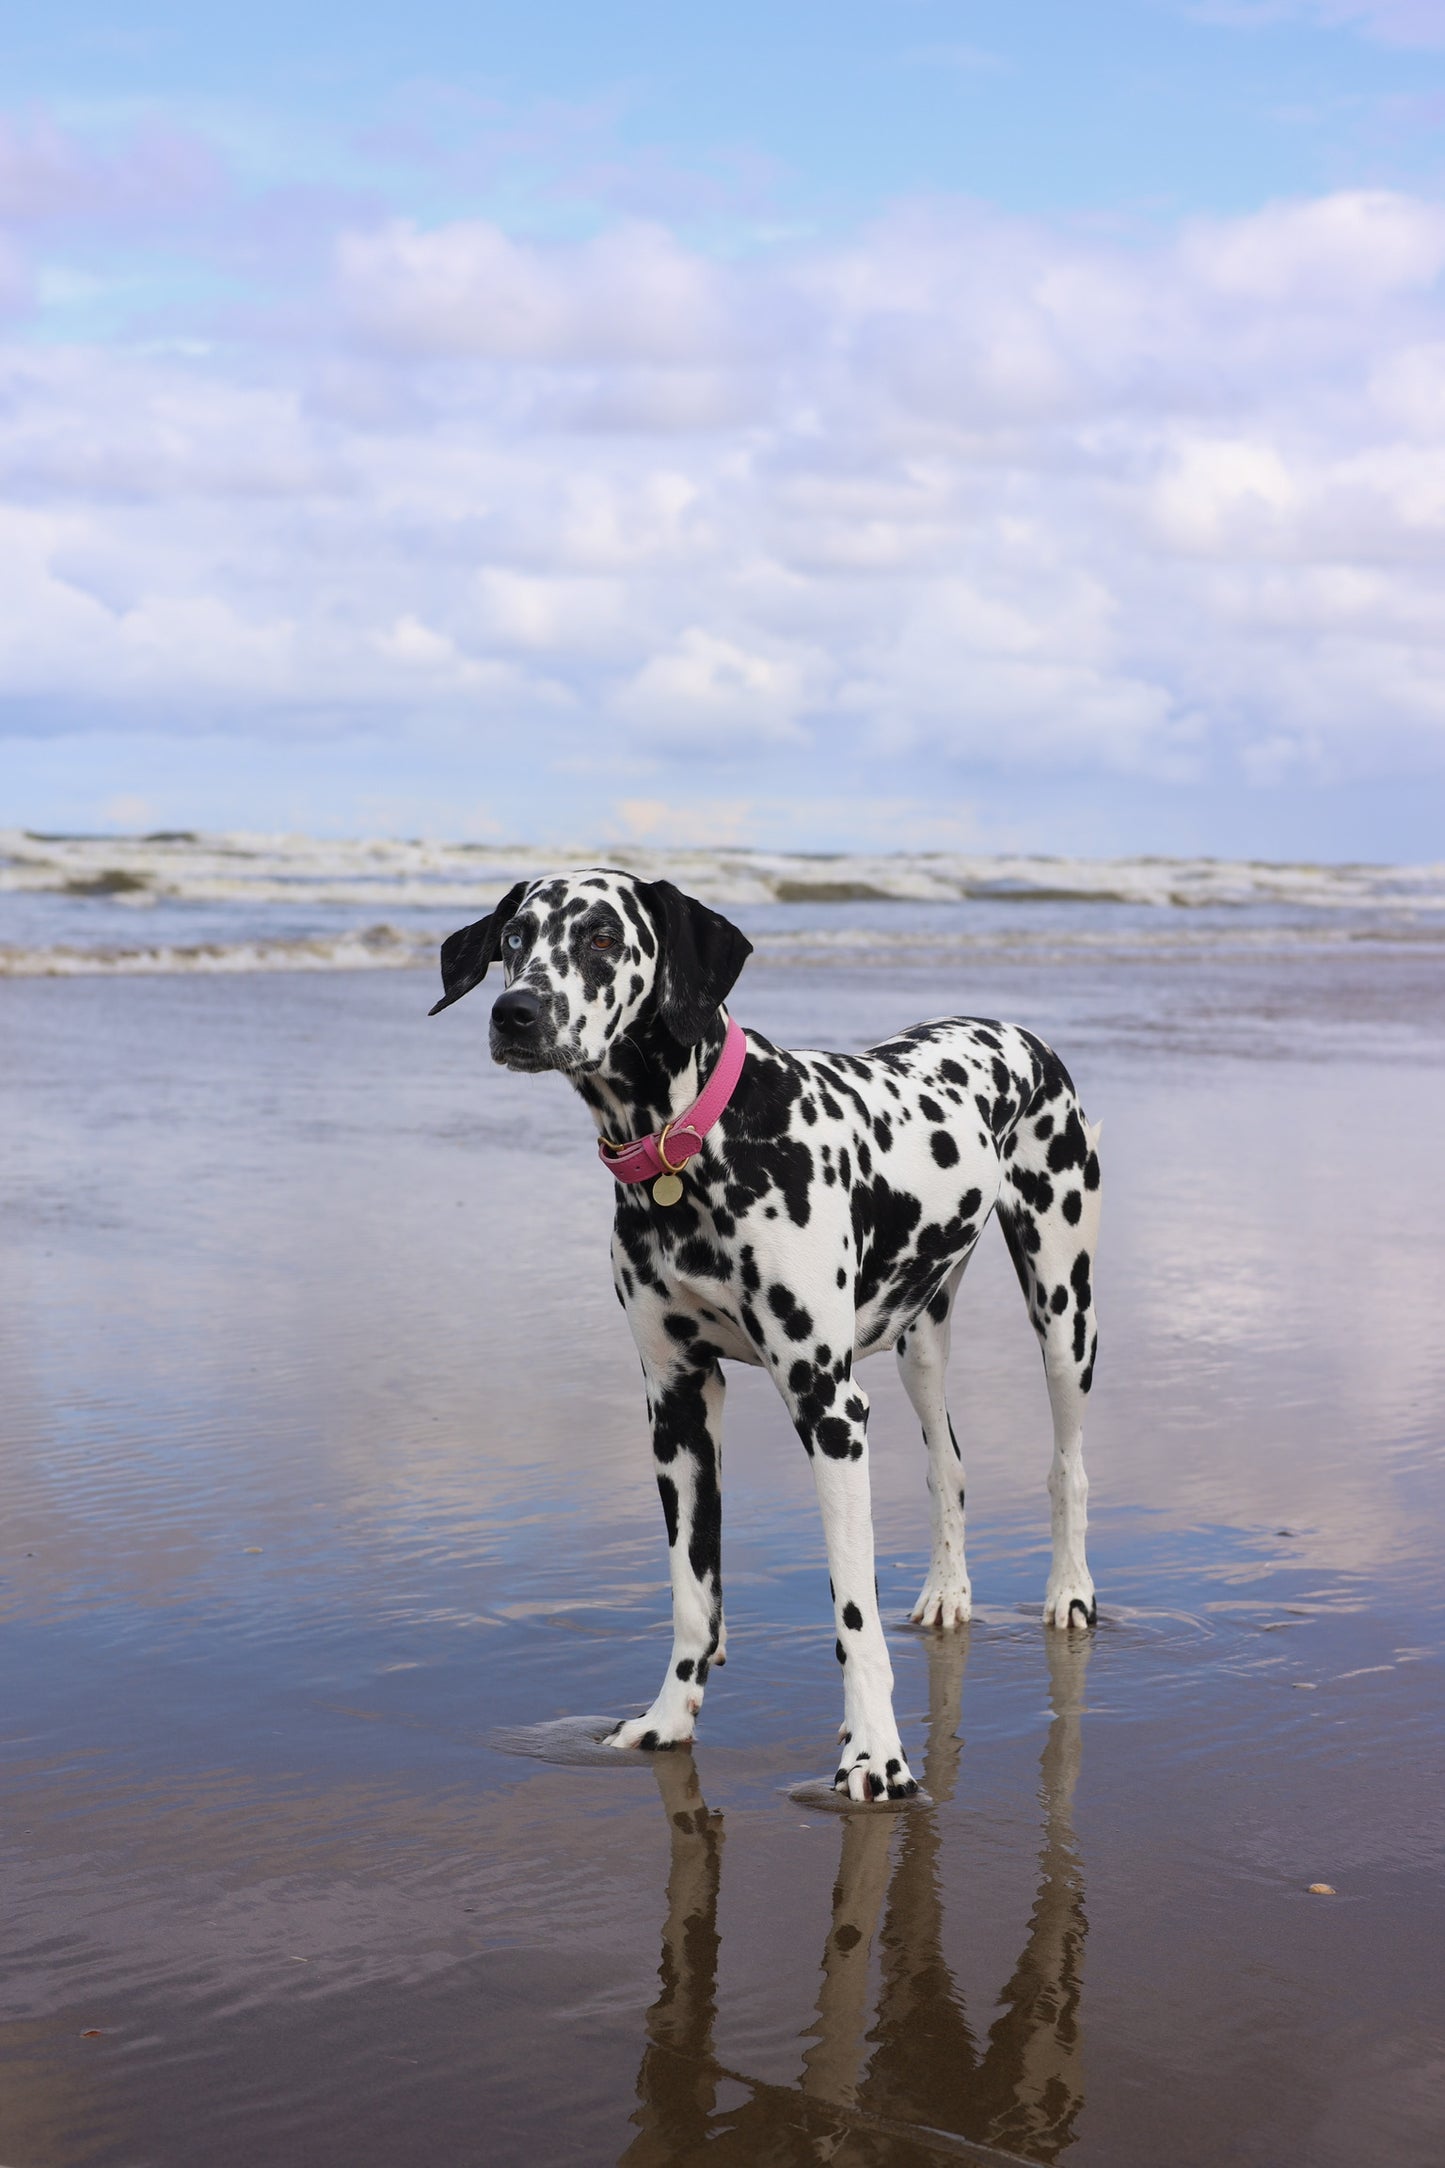 Hondenhalsband leer met naampenning - Roze